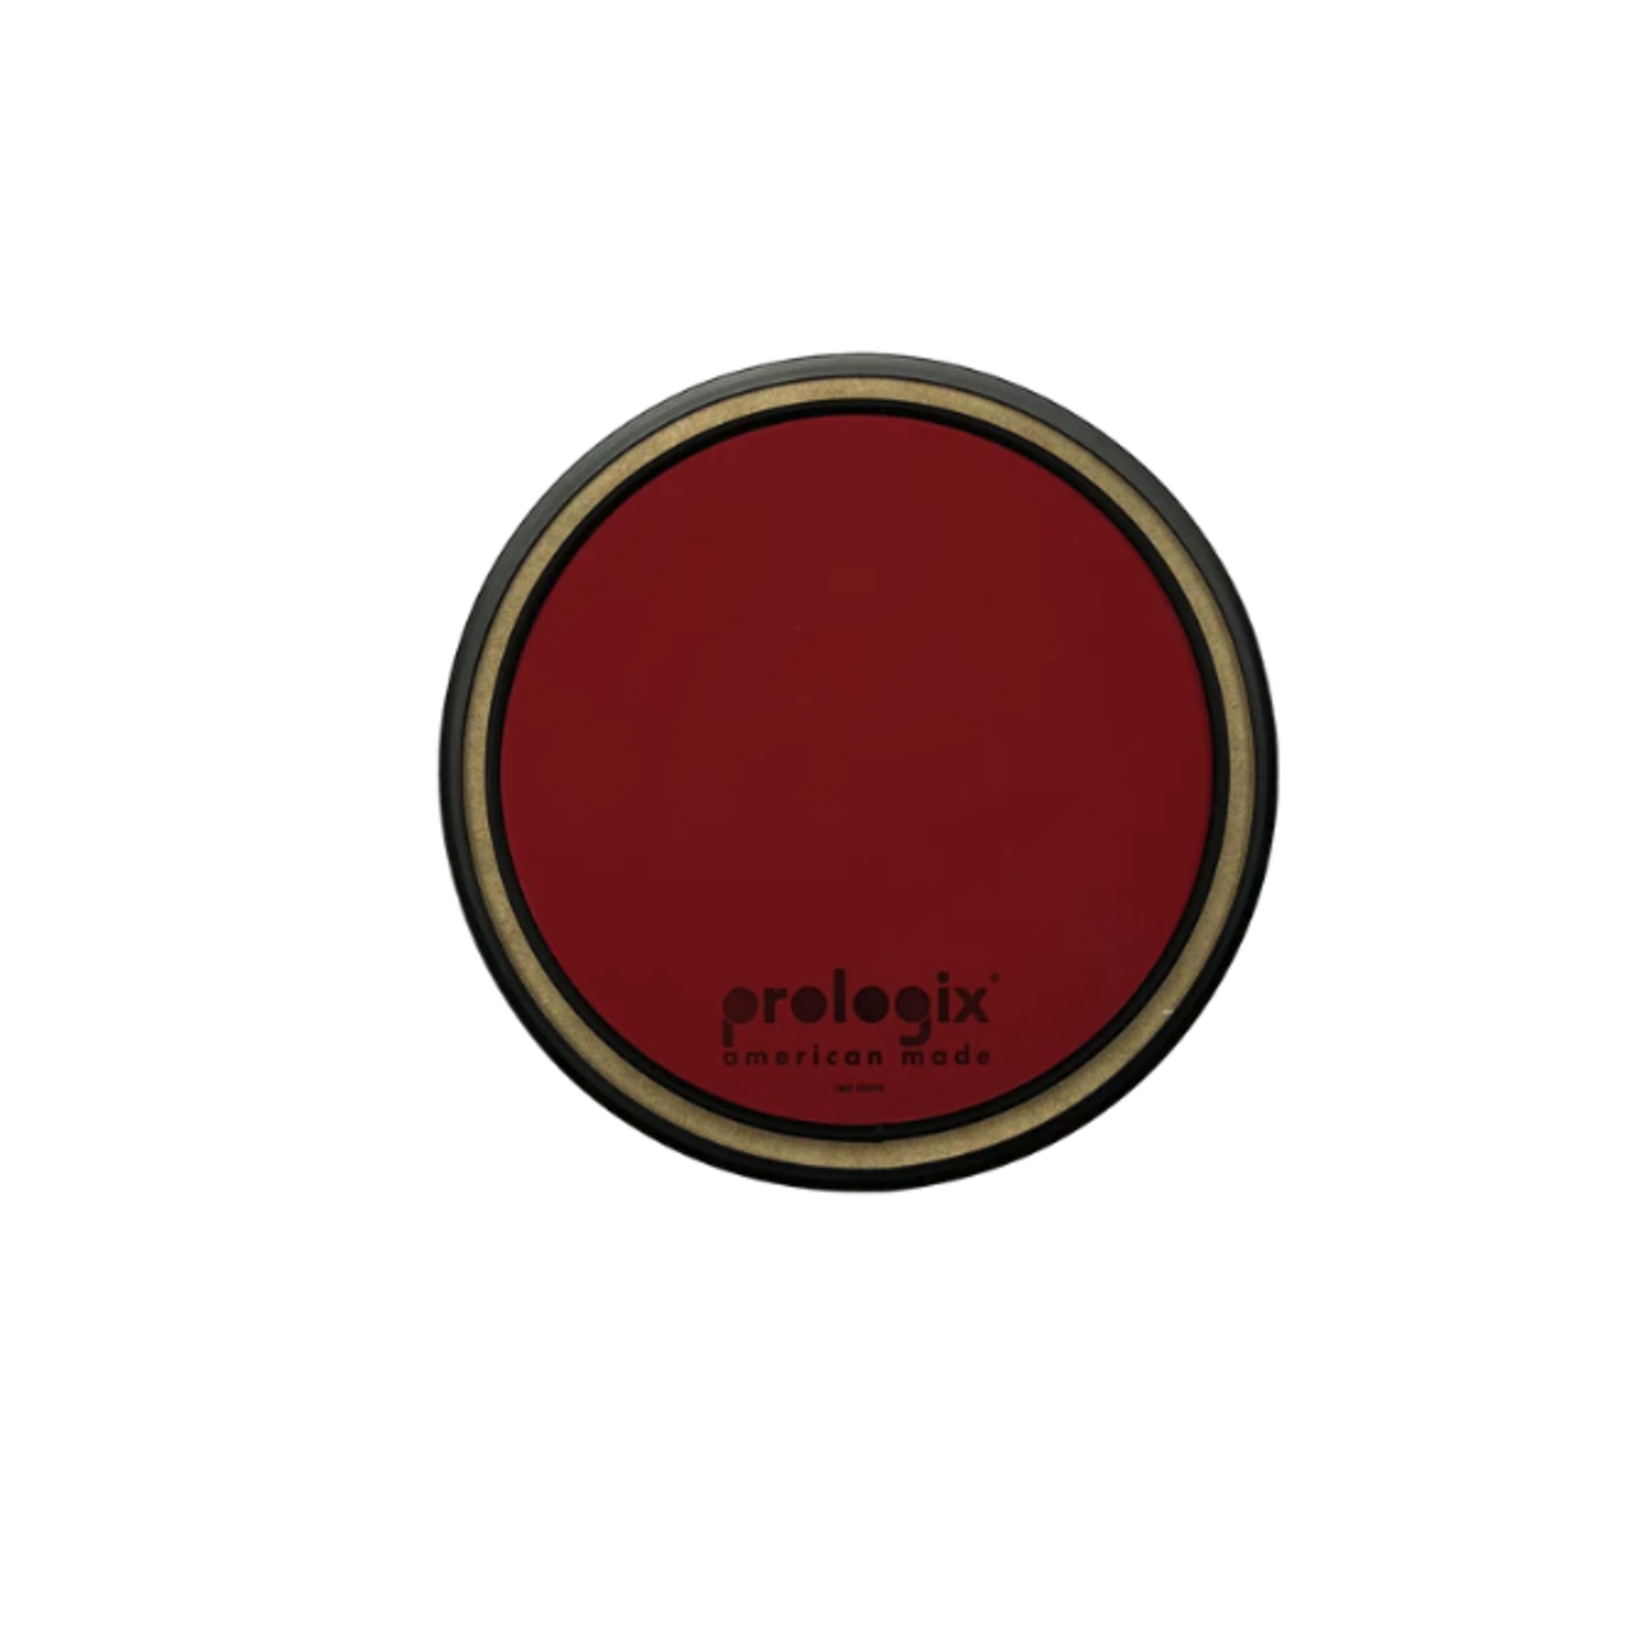 Prologix Prologix 8" Red Storm Pad